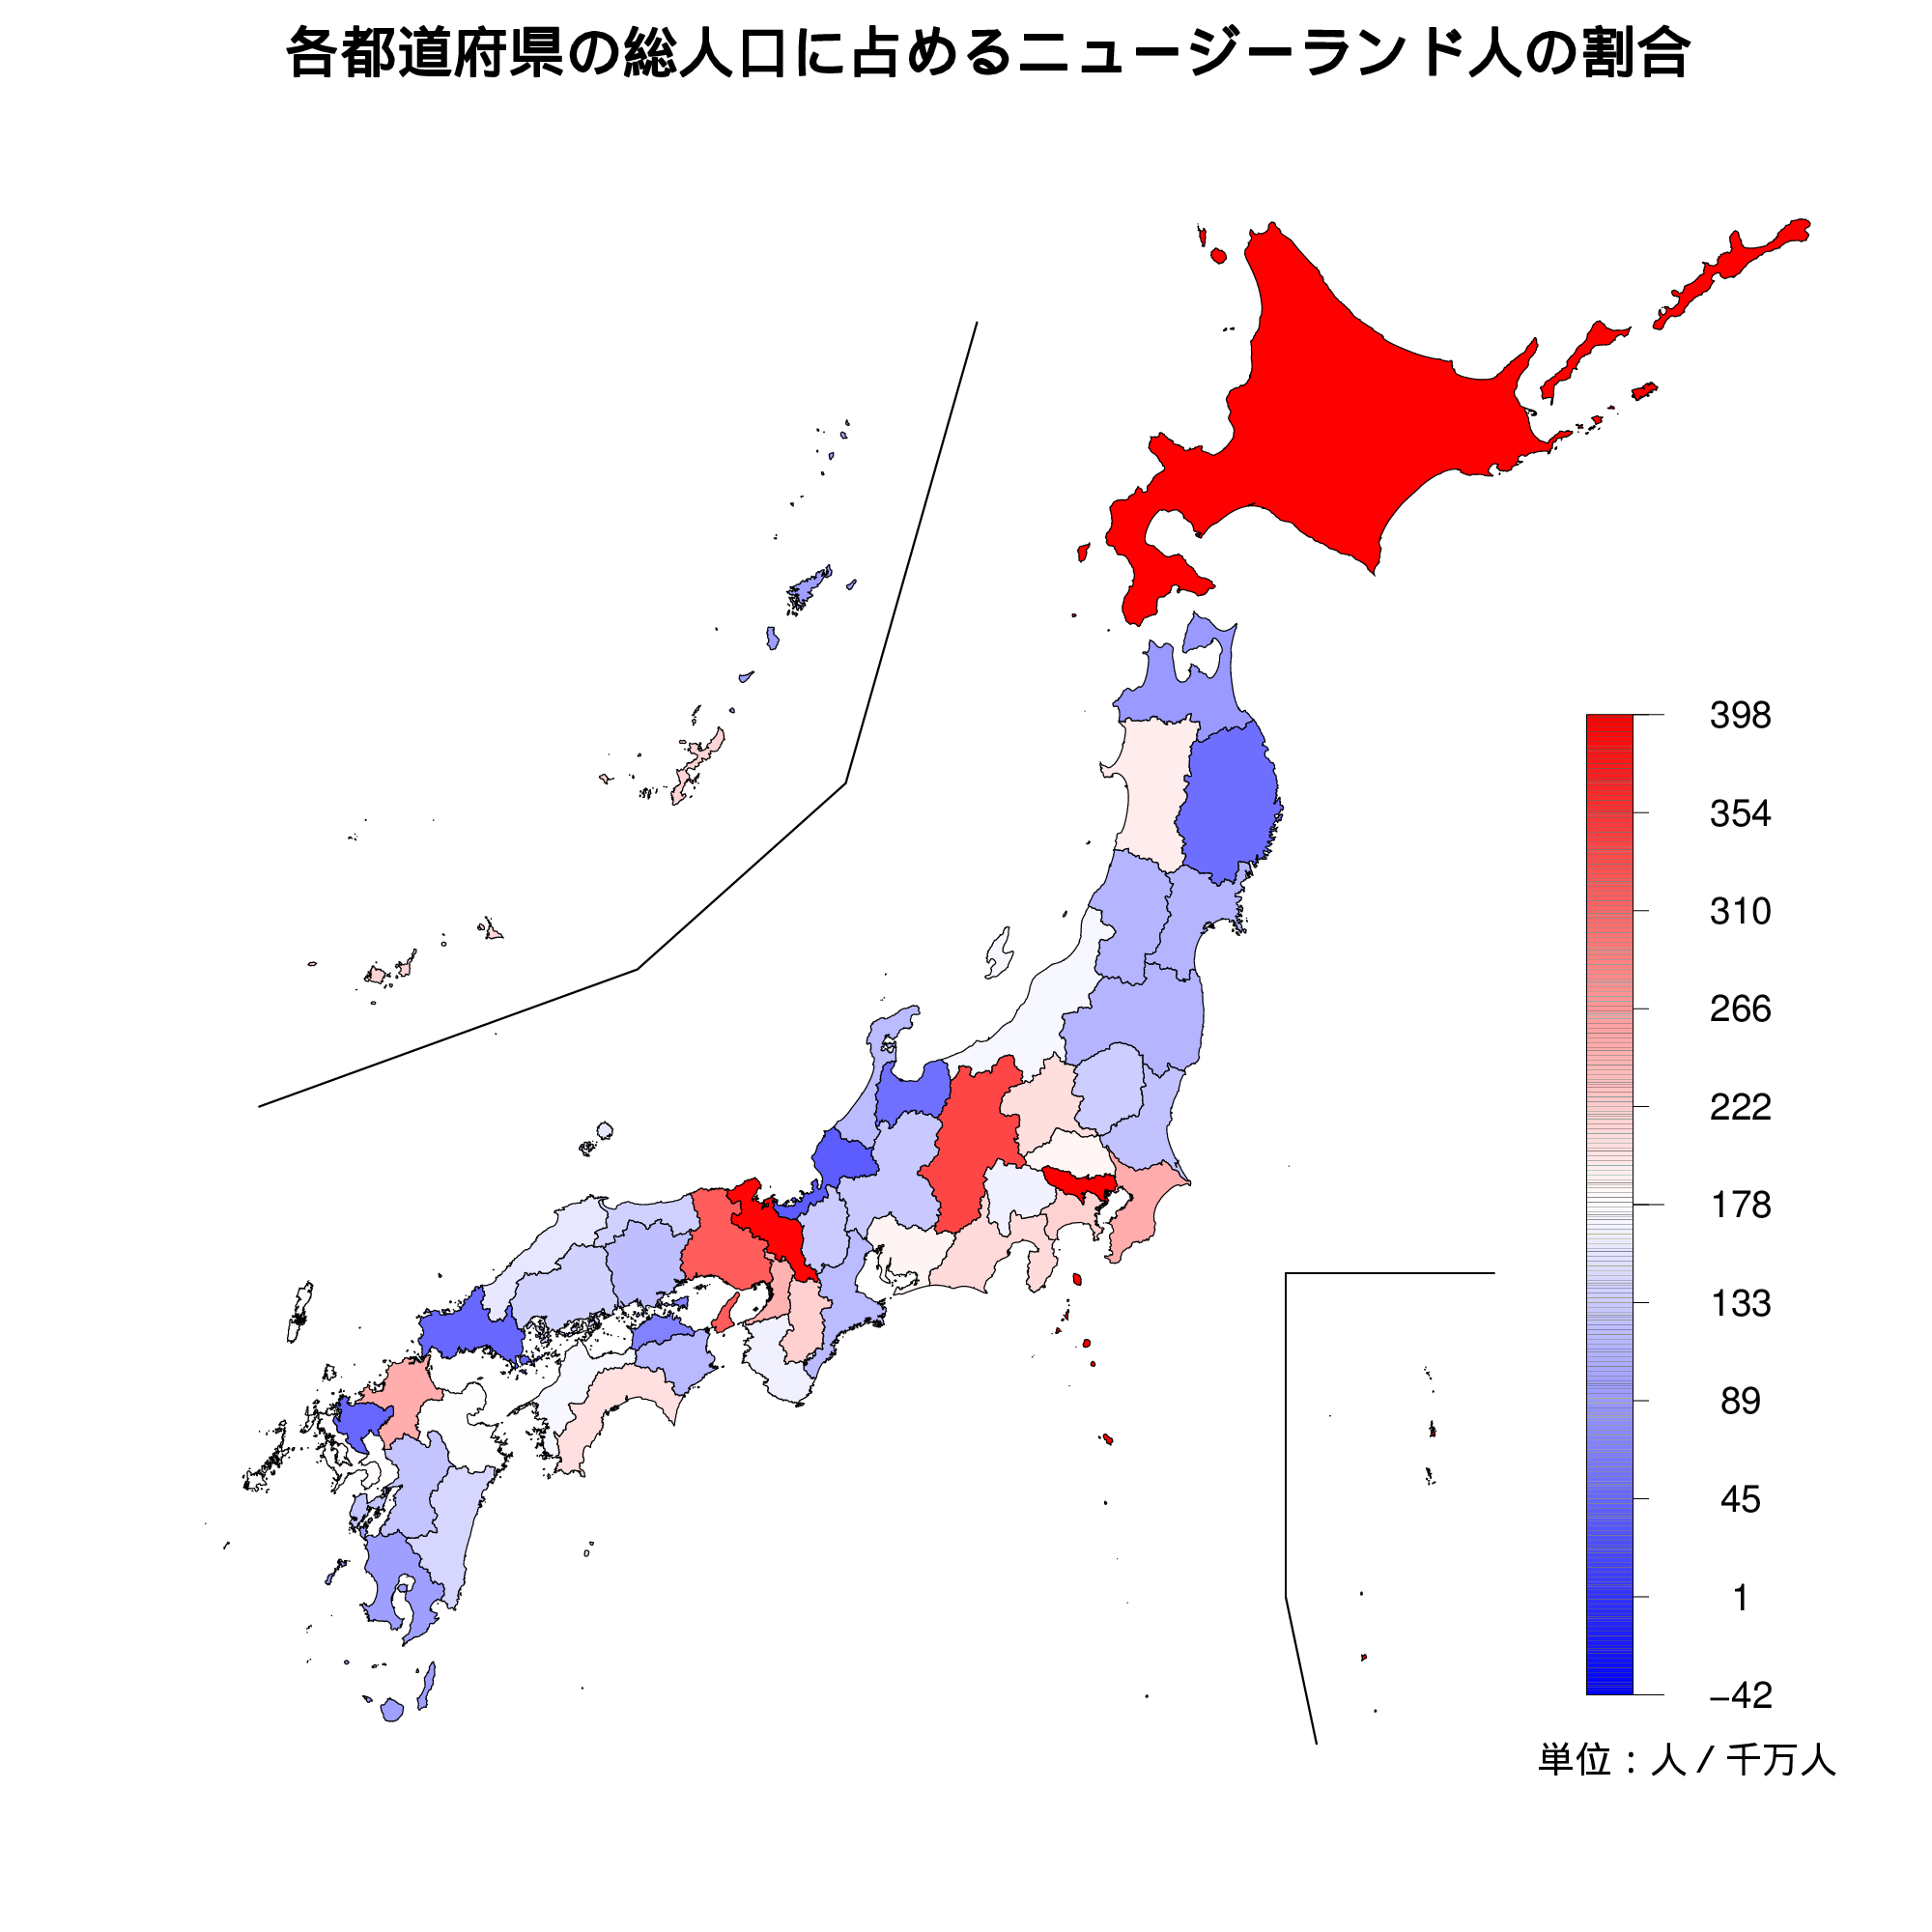 ニュージーランド人の人口比を示す地図